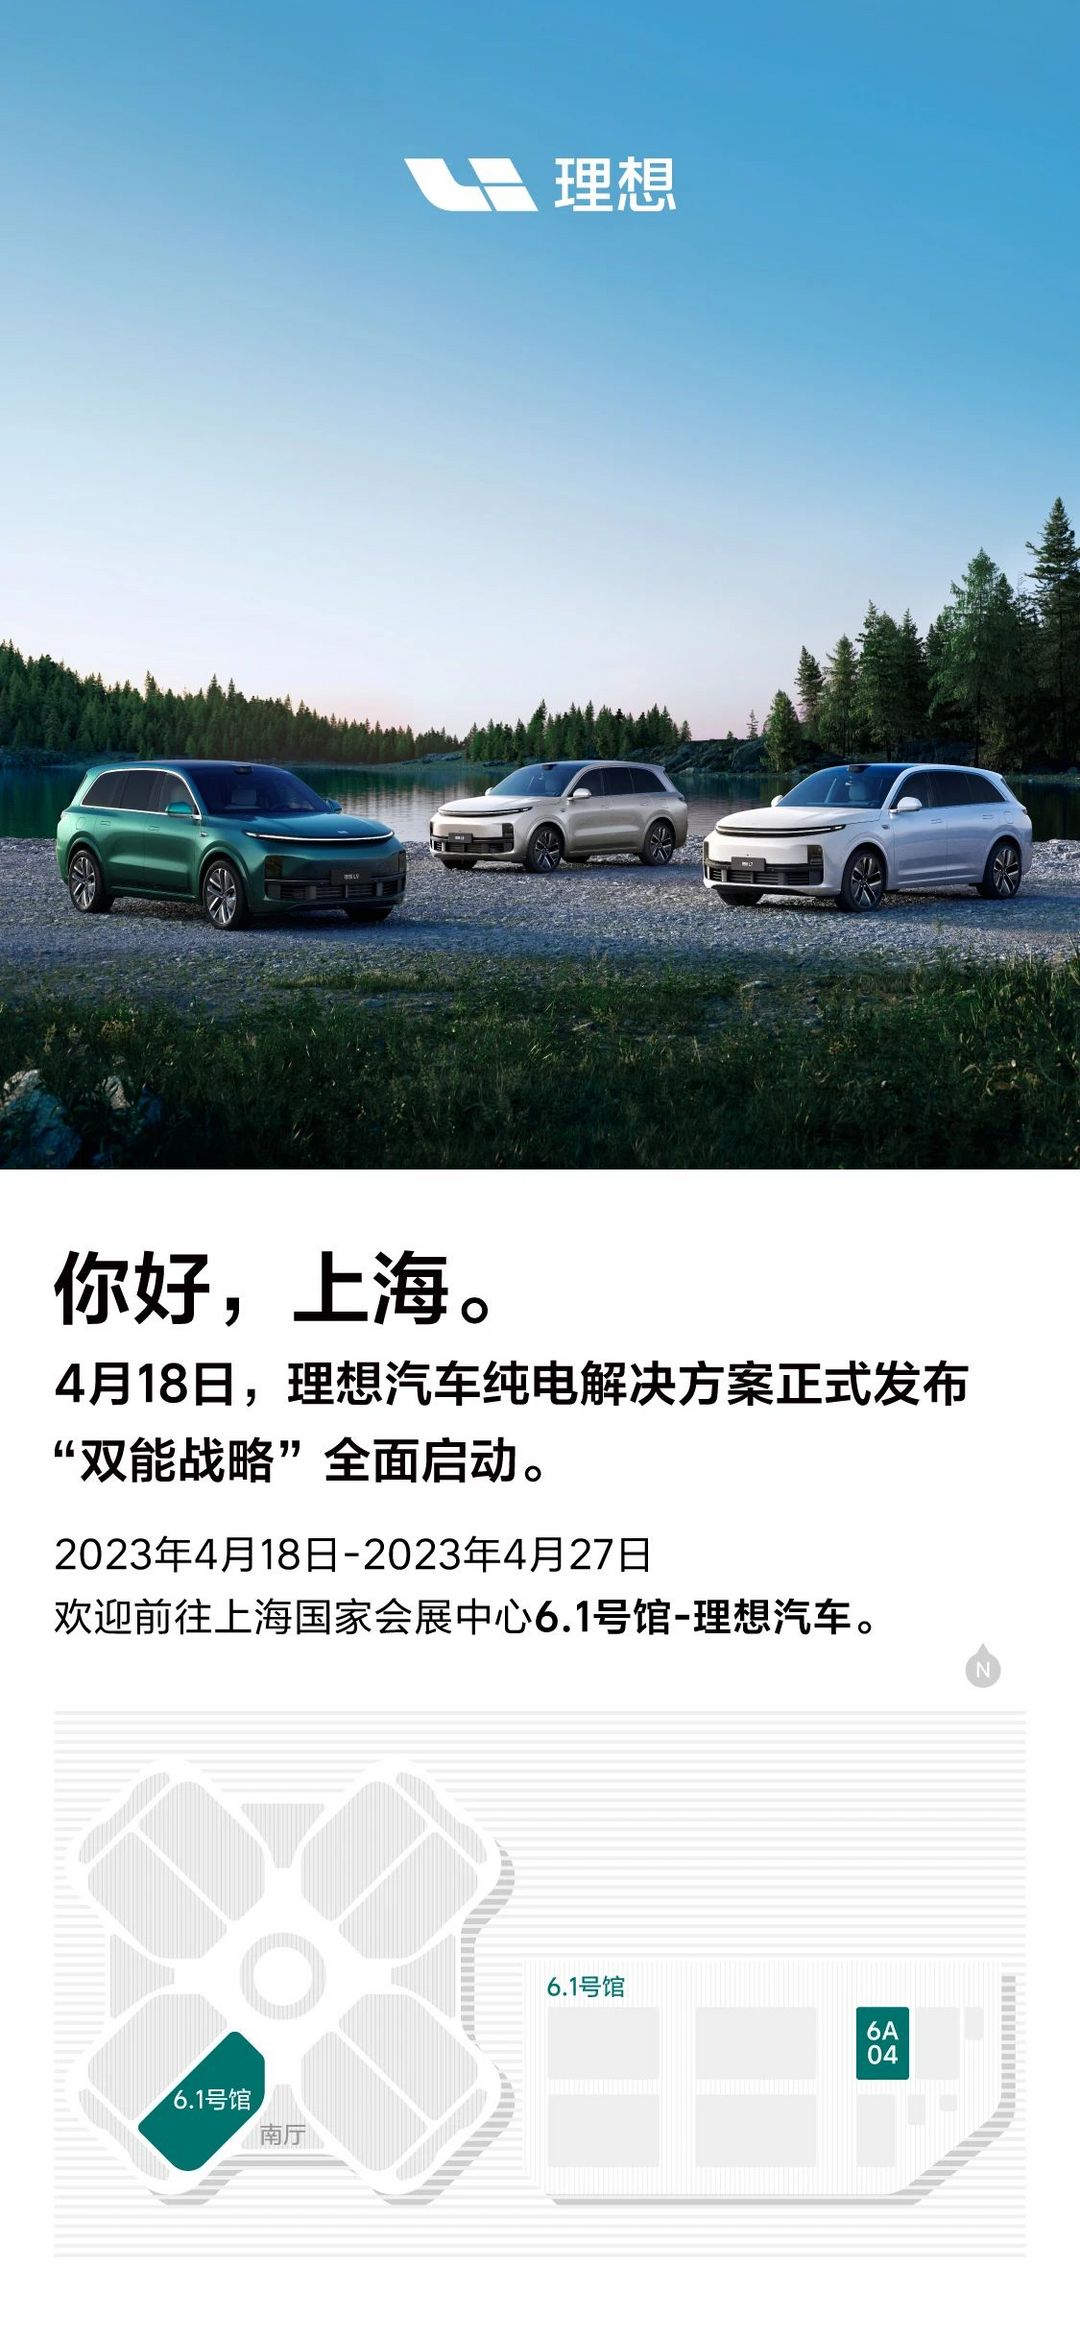 Компания Ideal представит чисто электрические решения на Шанхайском автосалоне